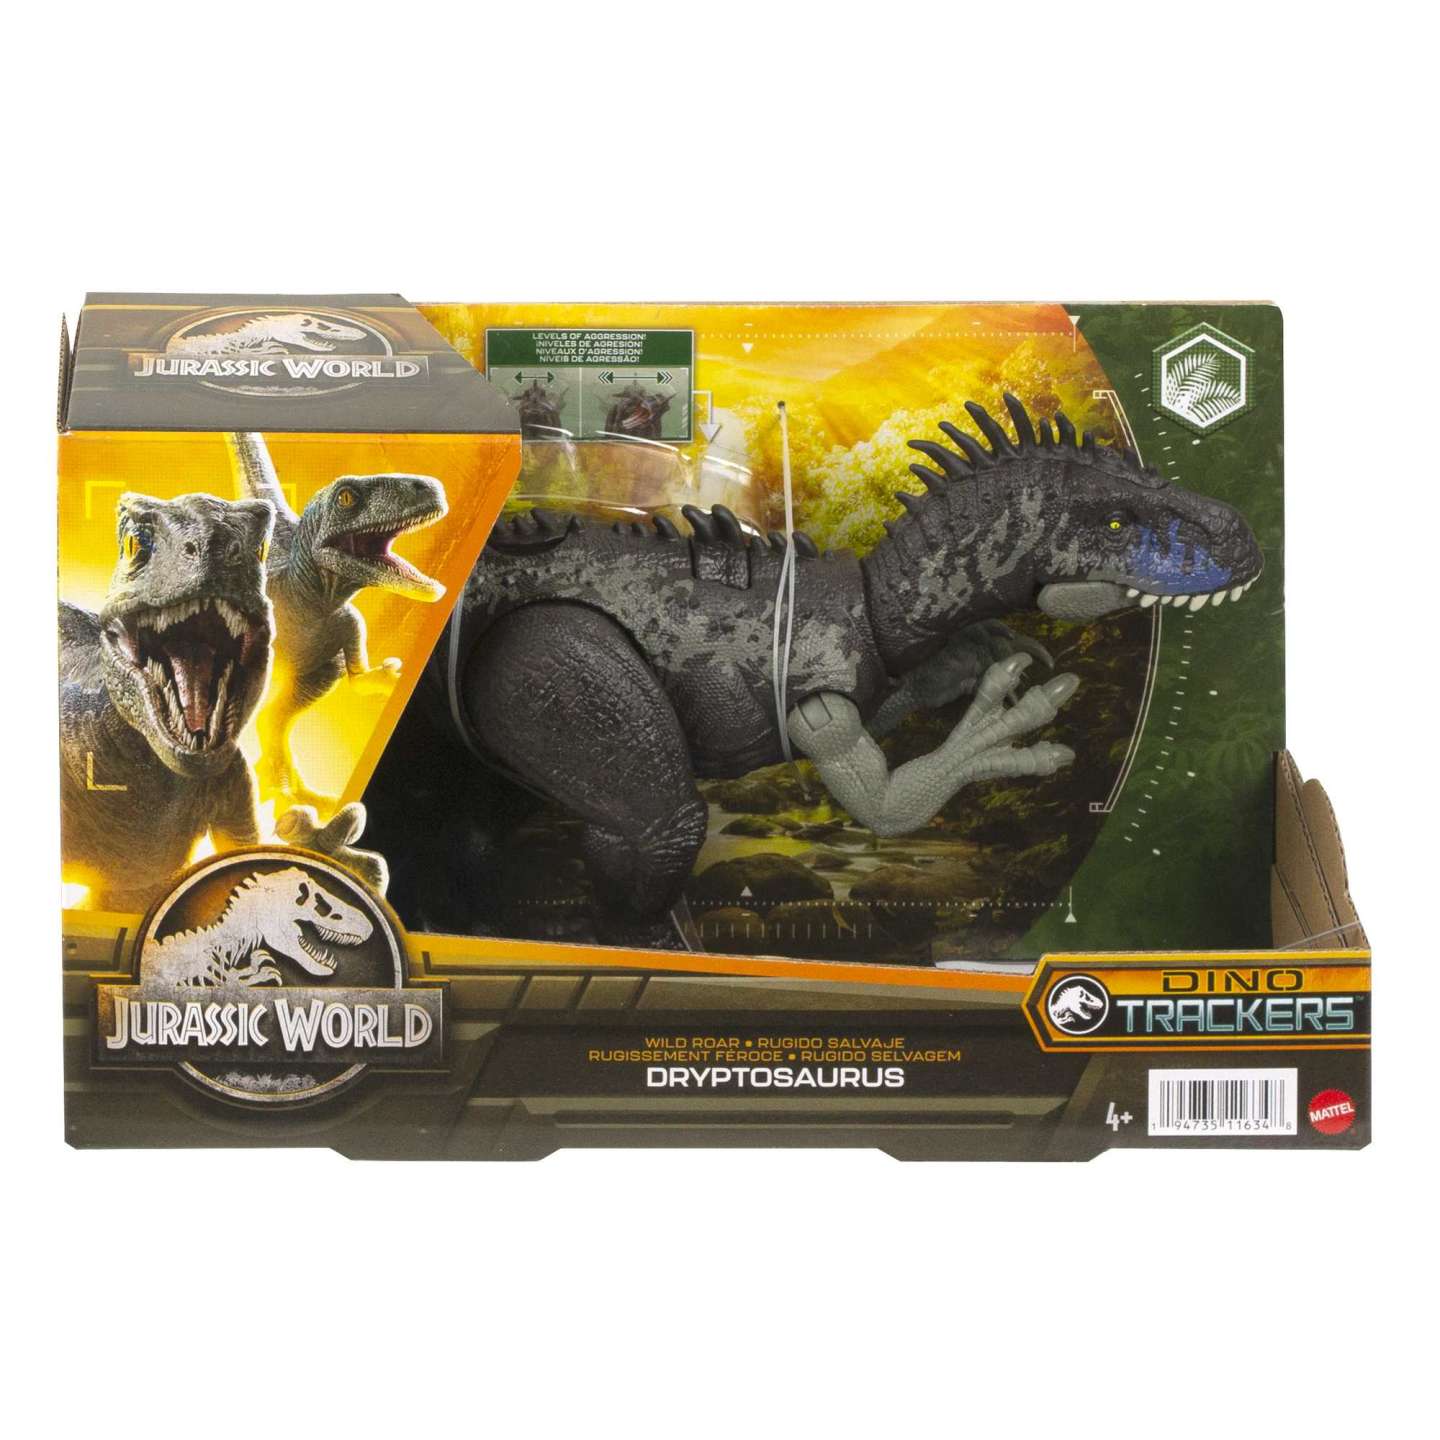 Jurassic World: Dryptosaurus Rugido Salvaje